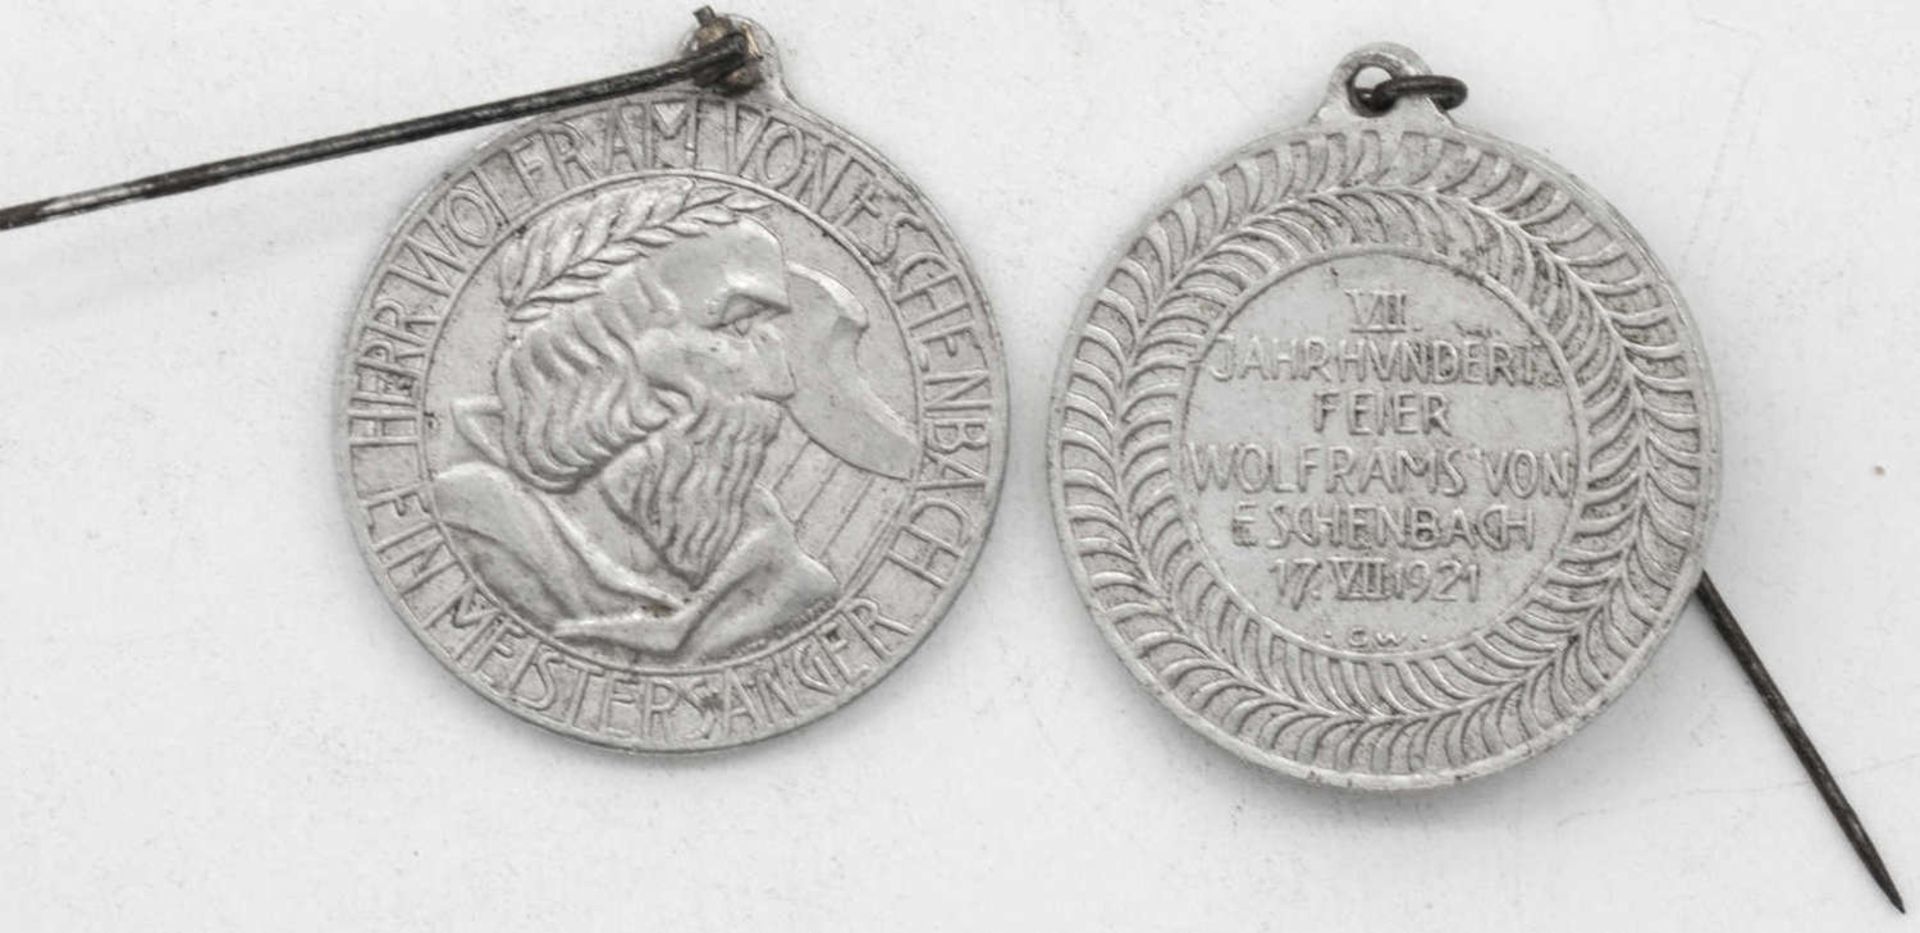 Zwei alte Orden "7. Jahrhundertfeier Wolframs von Eschenbach 17. VII. 1921. Aluminium.Two old medal - Image 2 of 2